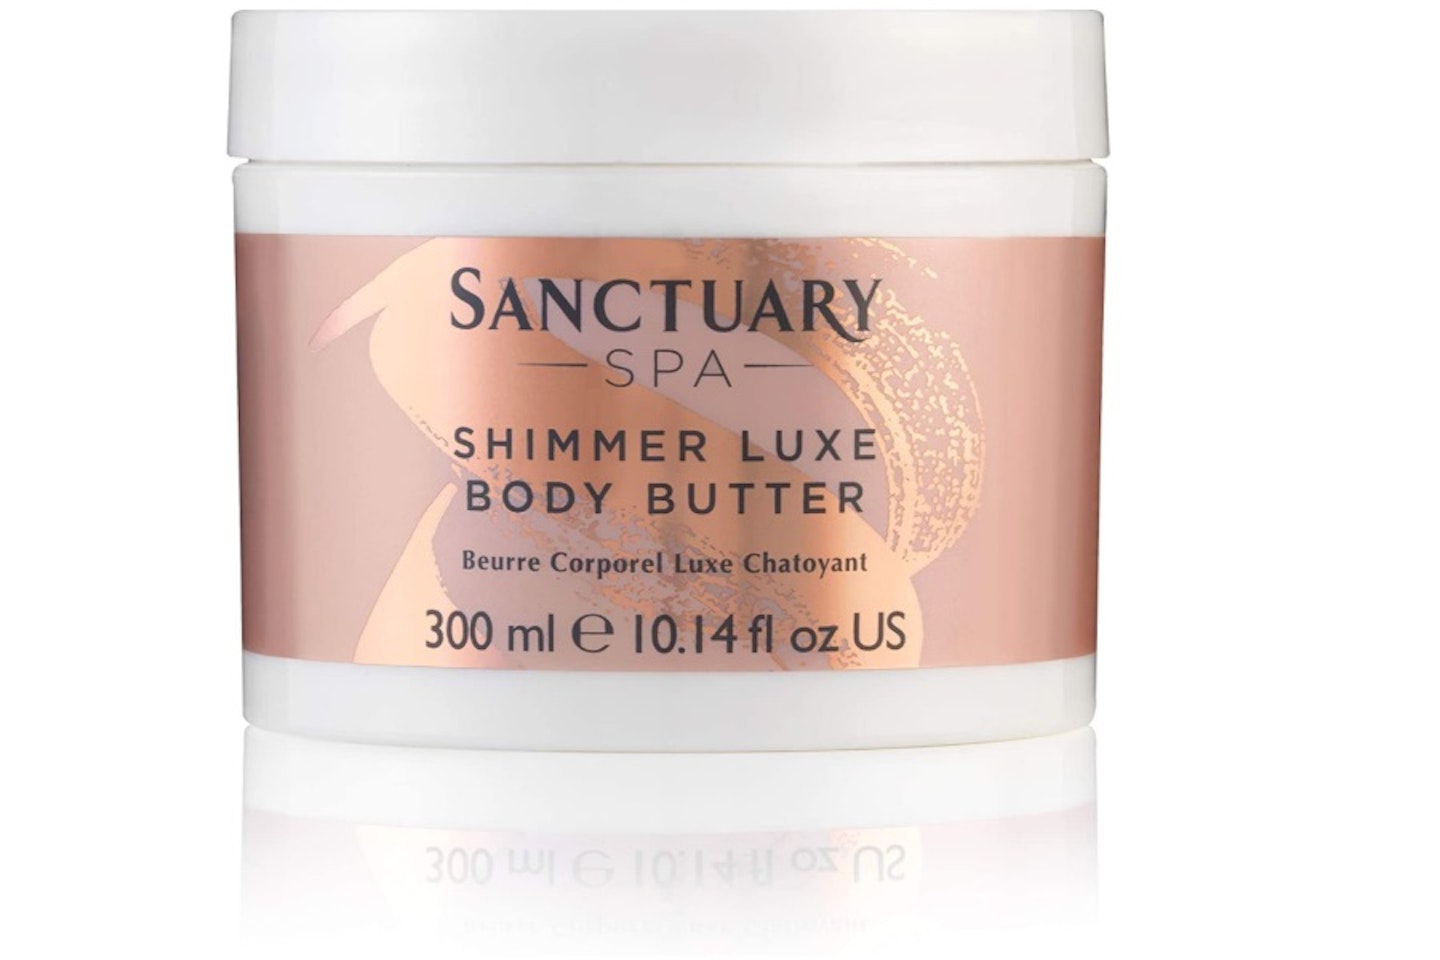 Sanctuary Spa Body Butter, Shimmer Luxe Rose Gold Radiance Body Moisturiser, 300 ml